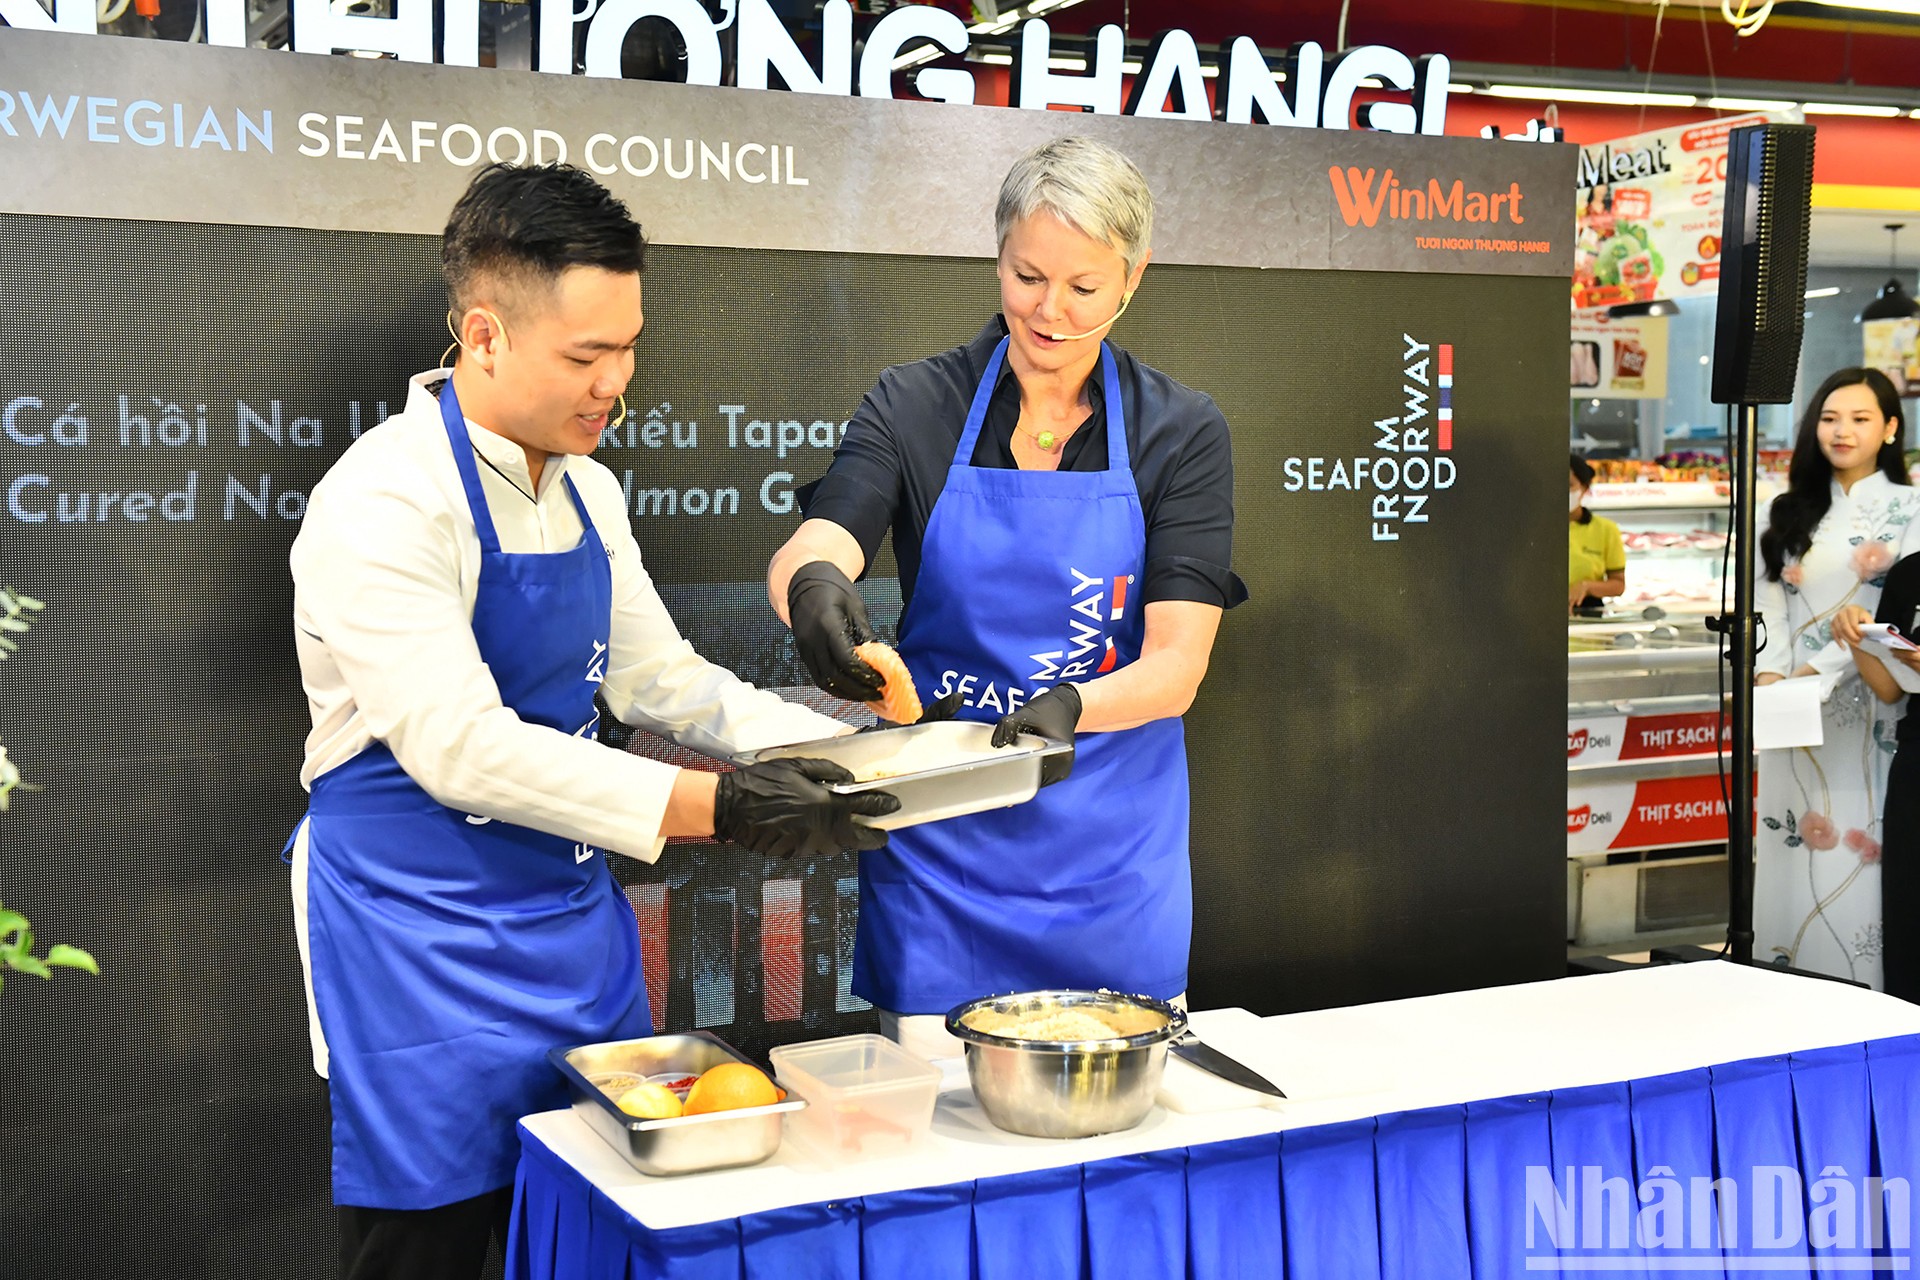 Embajadora de Noruega prepara plato de salmón para comensales vietnamitas